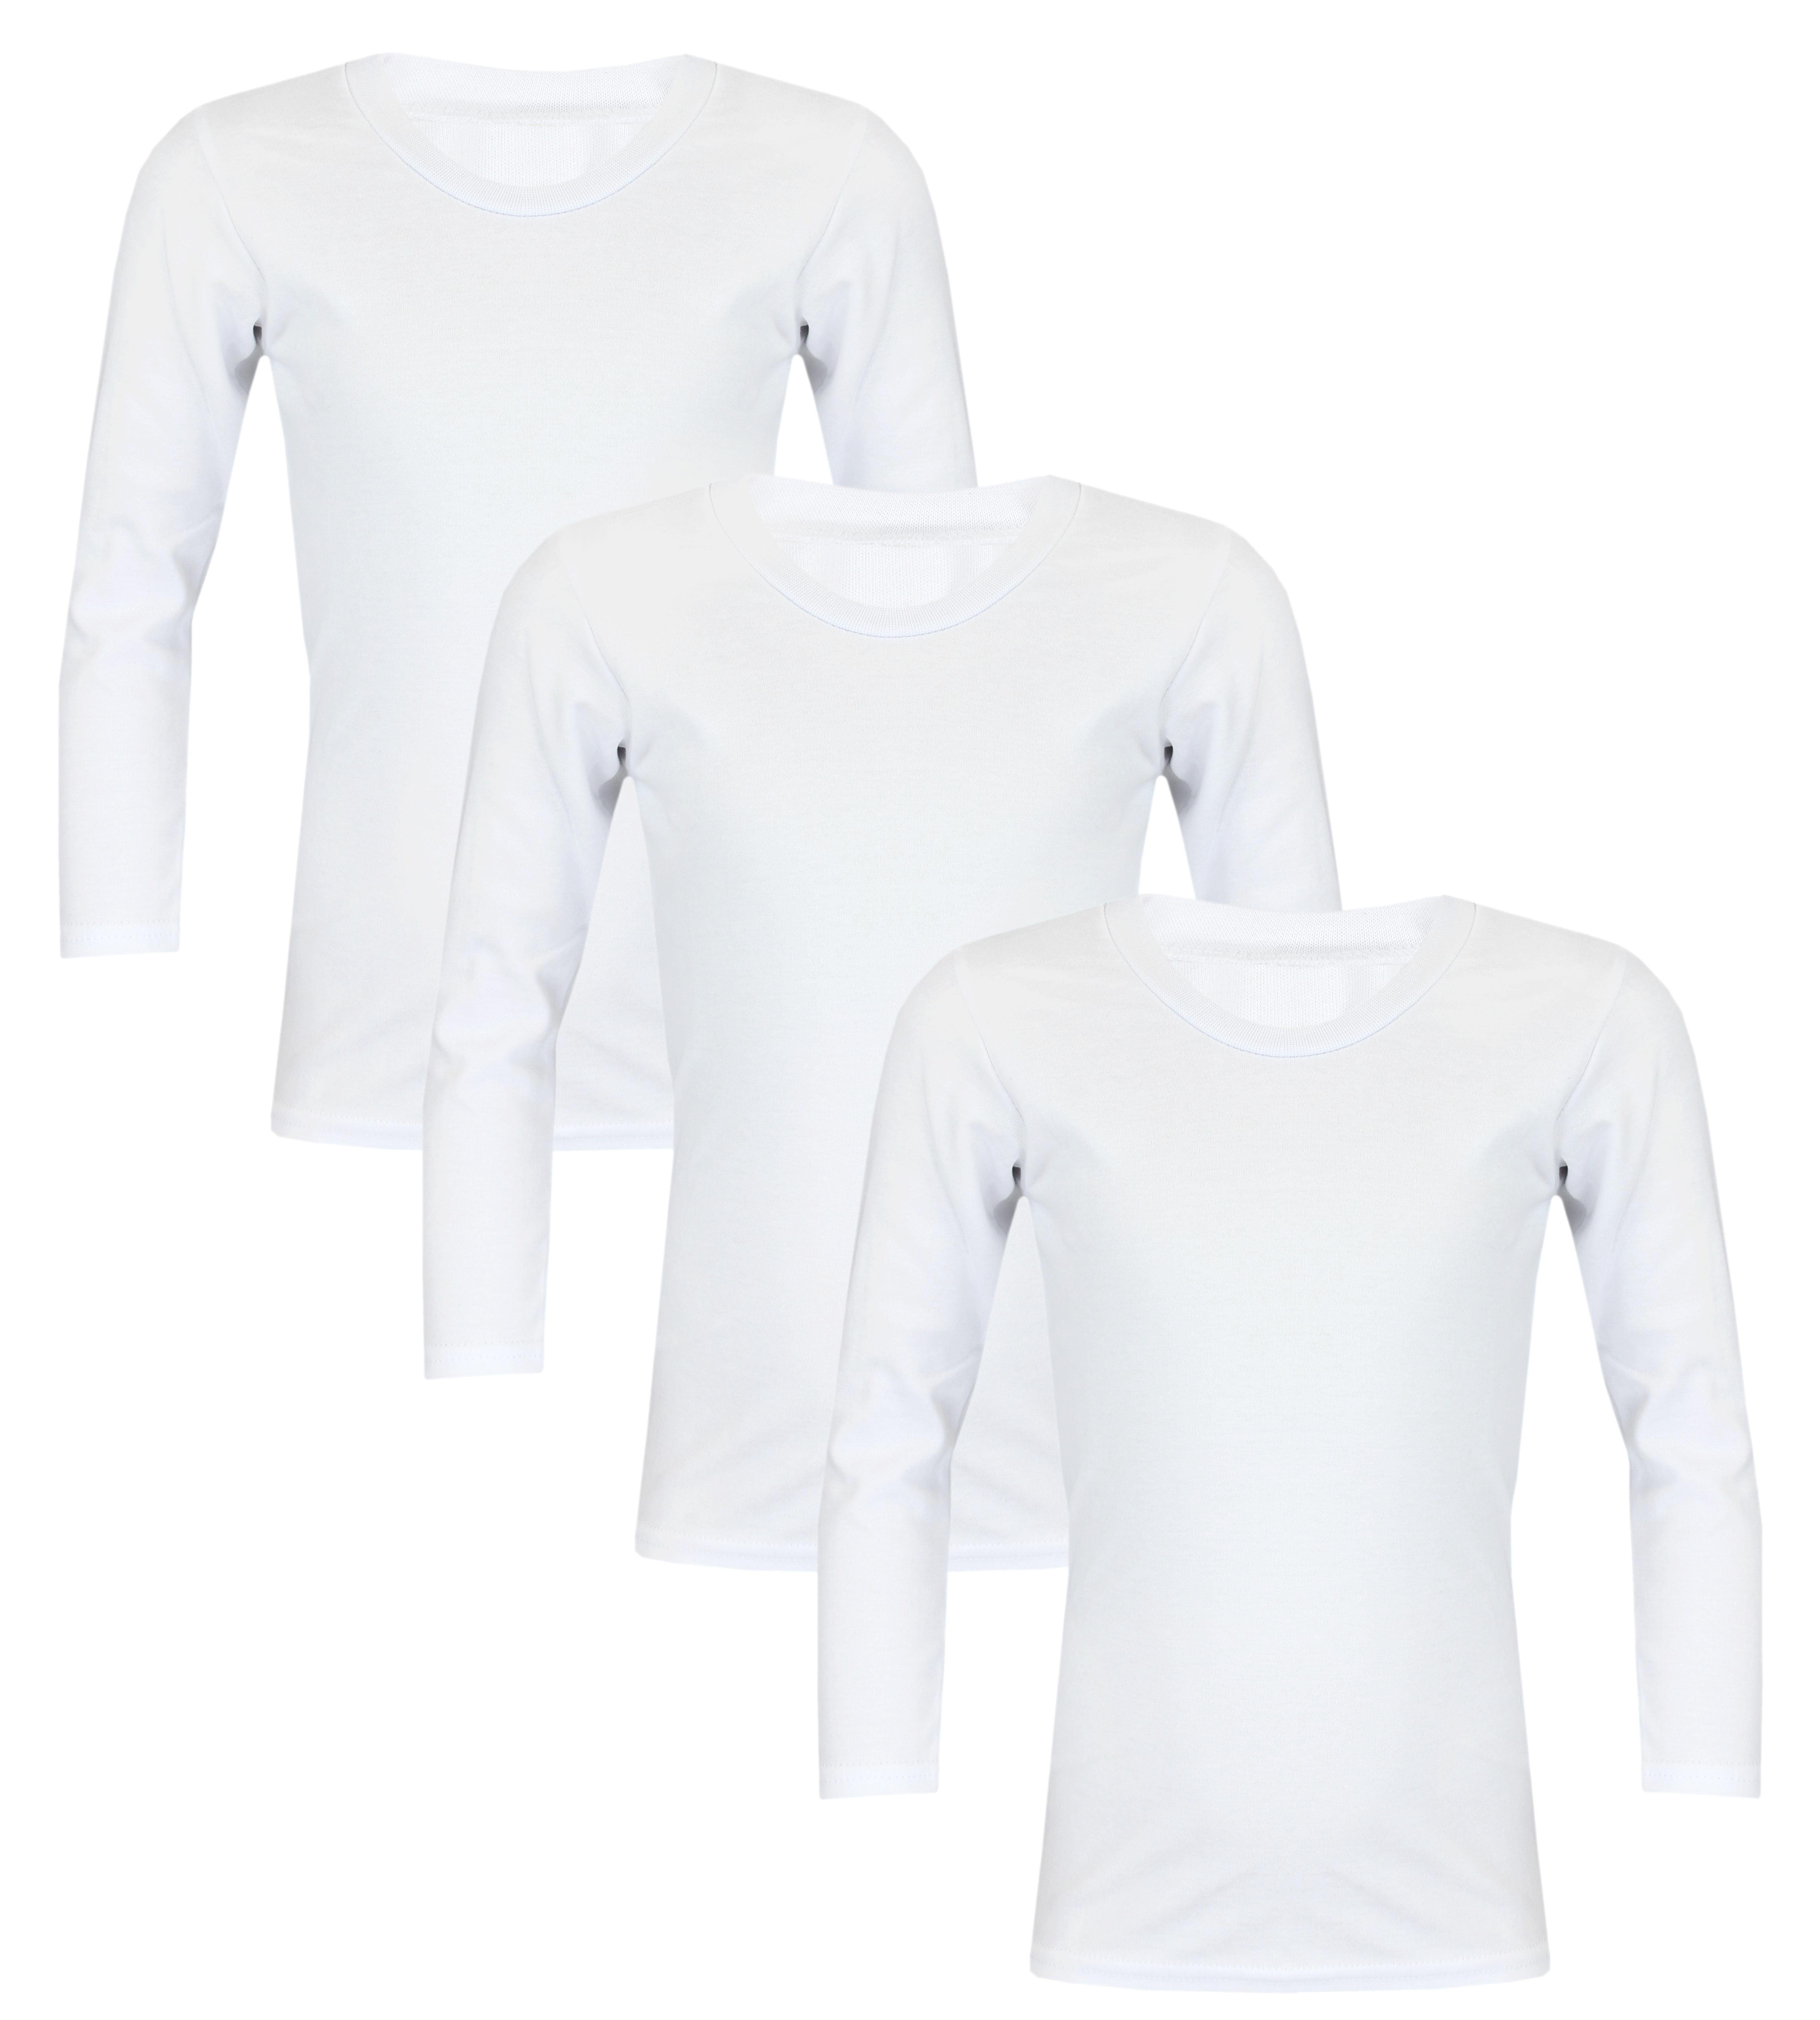 TupTam Unterhemd TupTam Kinder Unterhemd Unisex Pack Weiß Langarm 3er